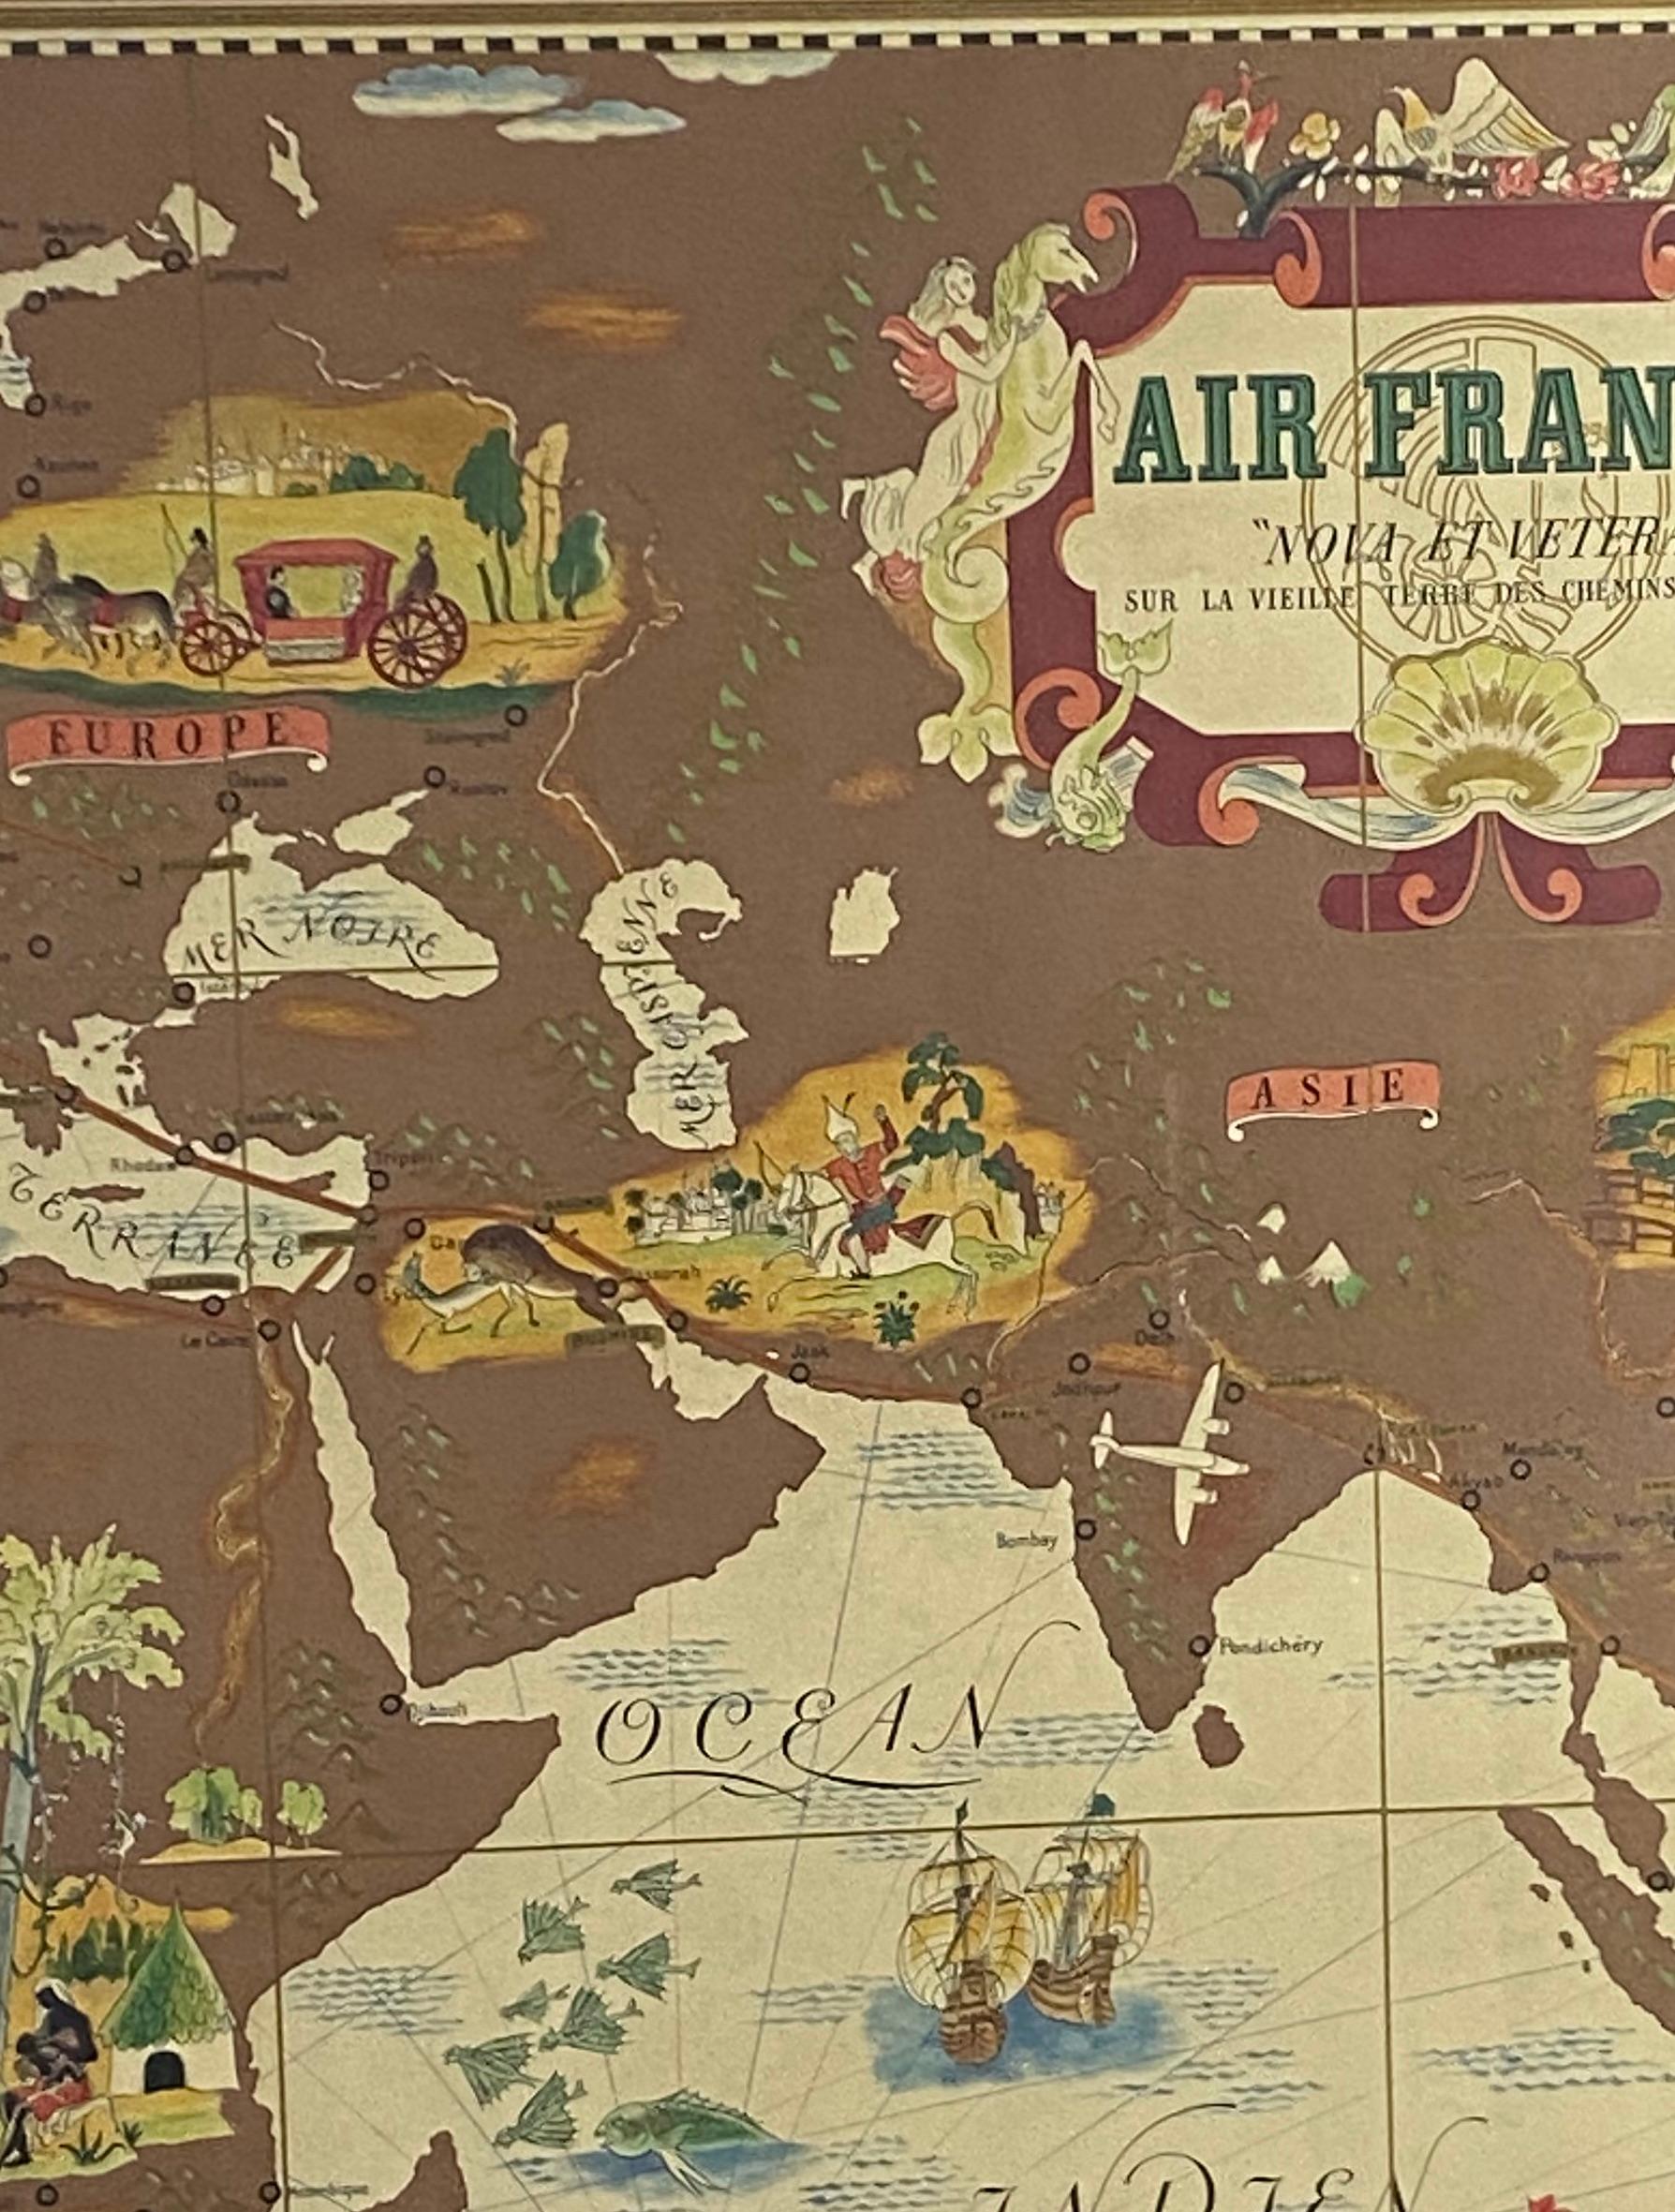 Air France 'Nova et Vetera' Plakatkarte entworfen von Lucien Boucher

Paris Frankreich 1939

Von Lucien Boucher für die Air France entworfenes Werbeplakat, das 1939 zu Beginn des Zweiten Weltkriegs von Perceval in Paris veröffentlicht wurde. Es